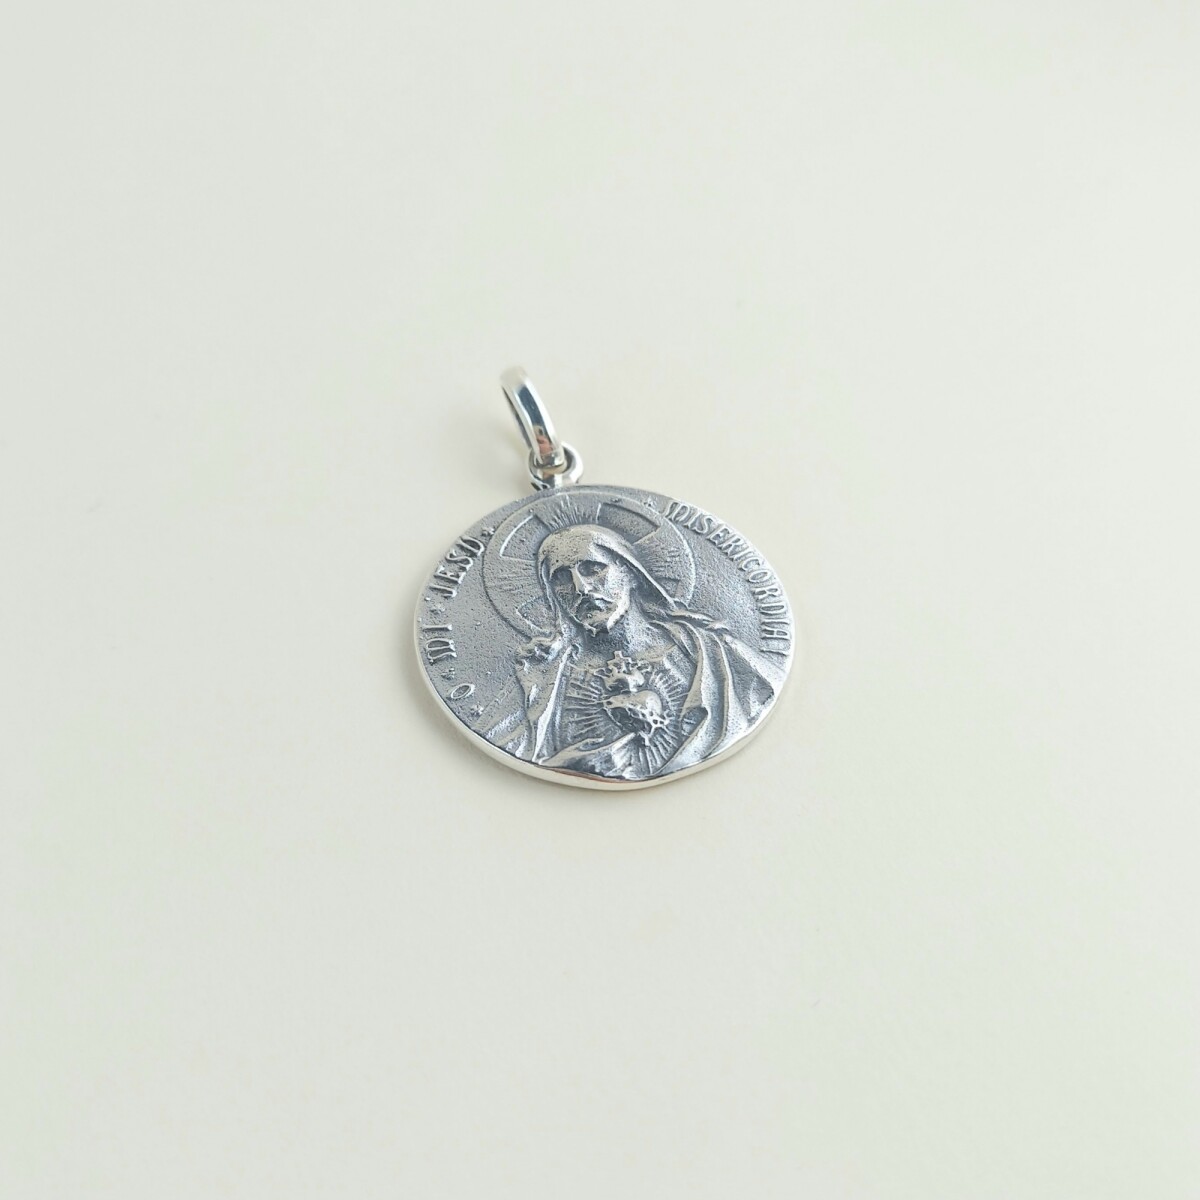 Medalla religiosa de plata 925, Escapulario (Sagrado Corazón de Jesús y Virgen del Carmen) , diámetro 24mm. 